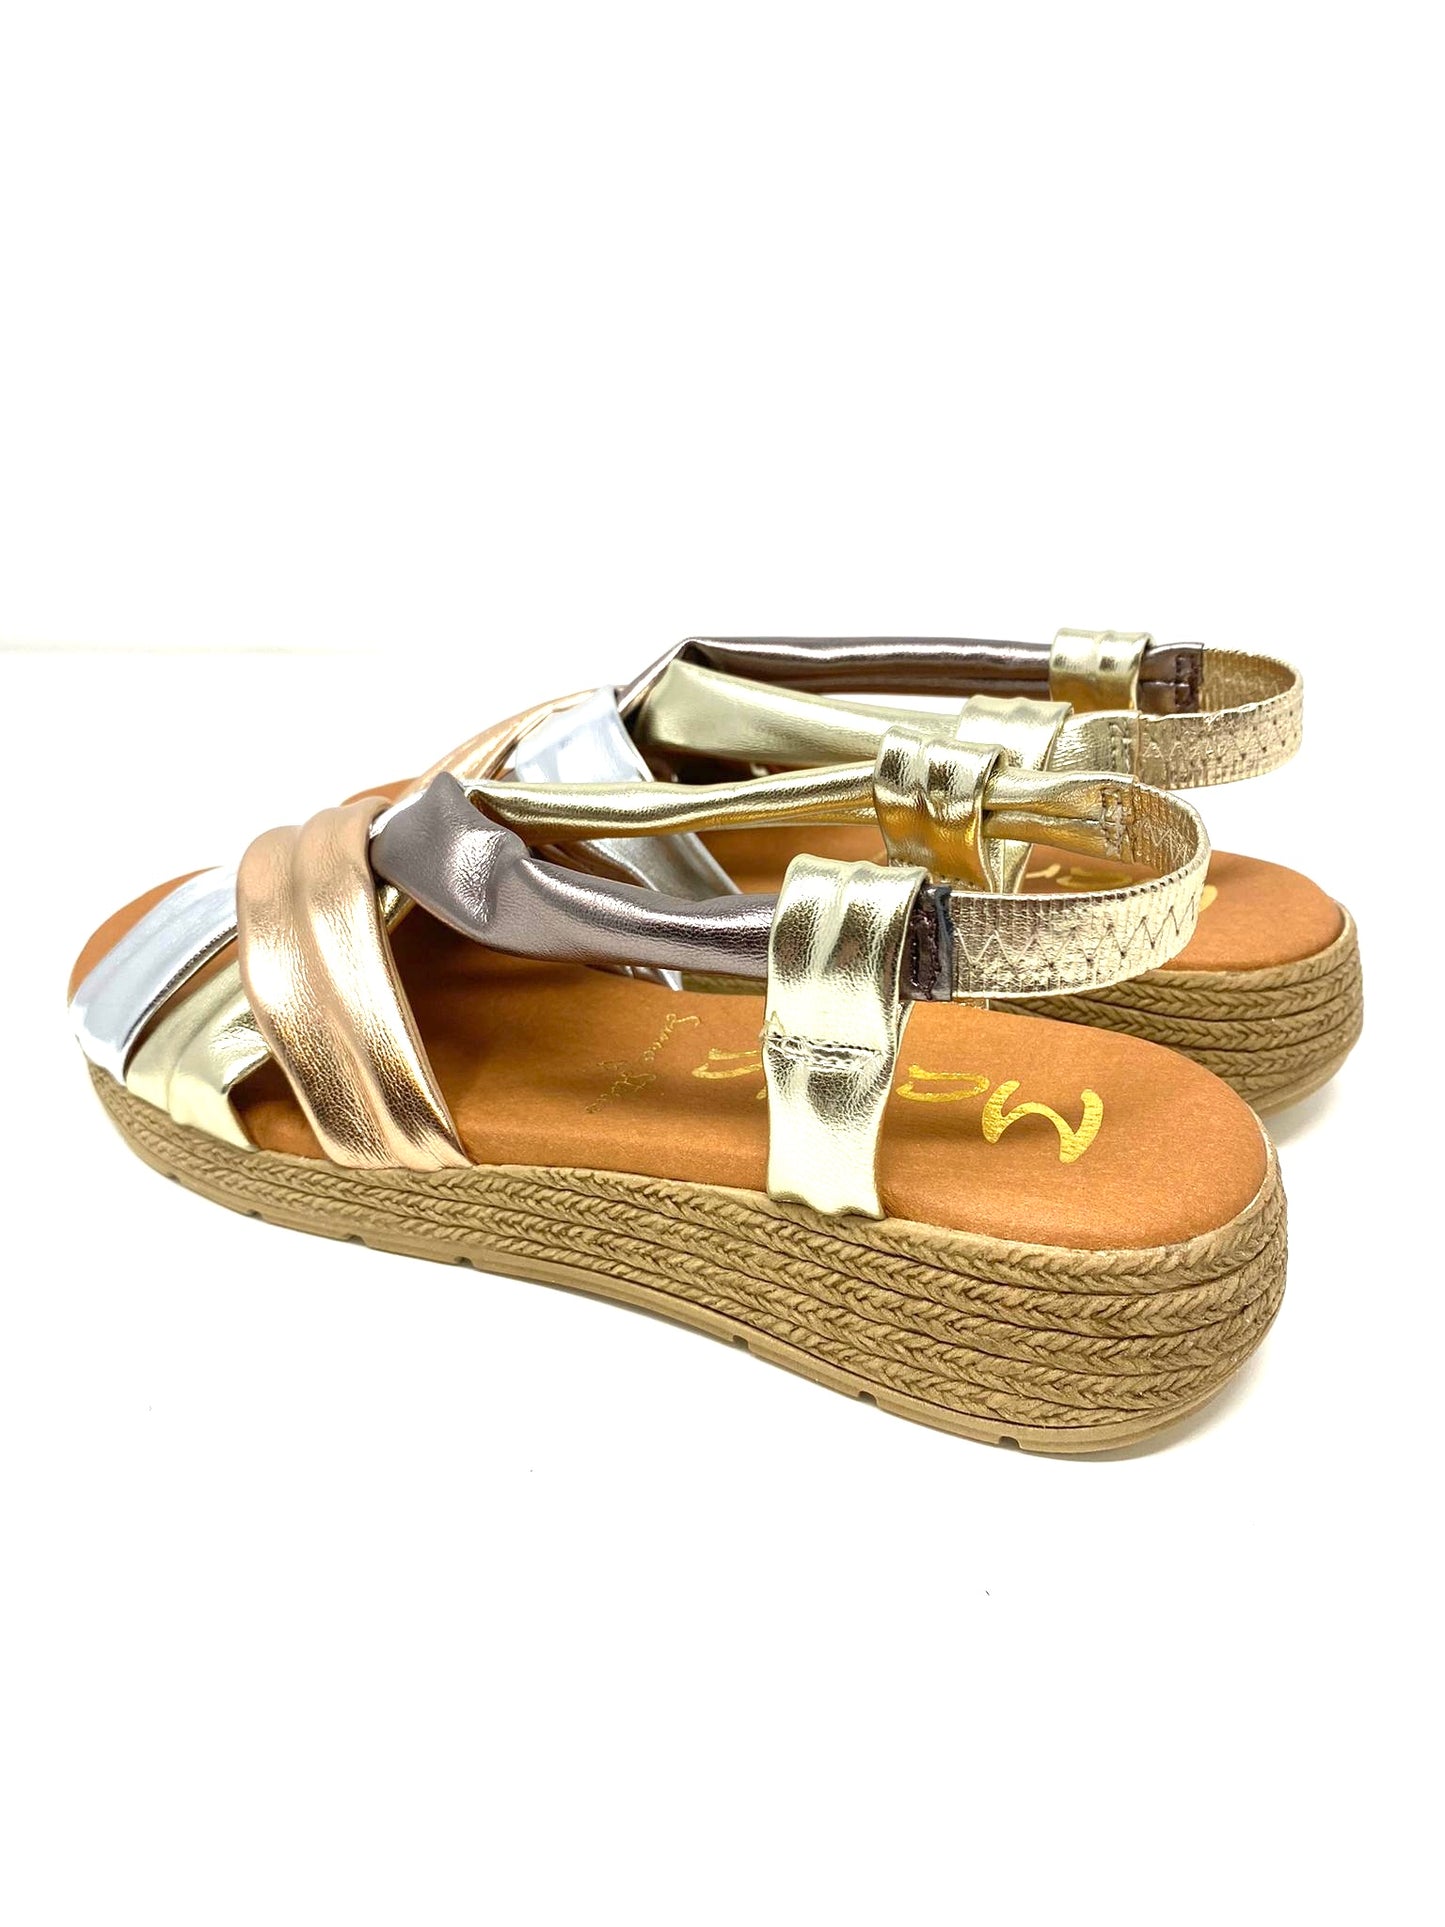 Marila Tampi shiny multi metallic flat sandal